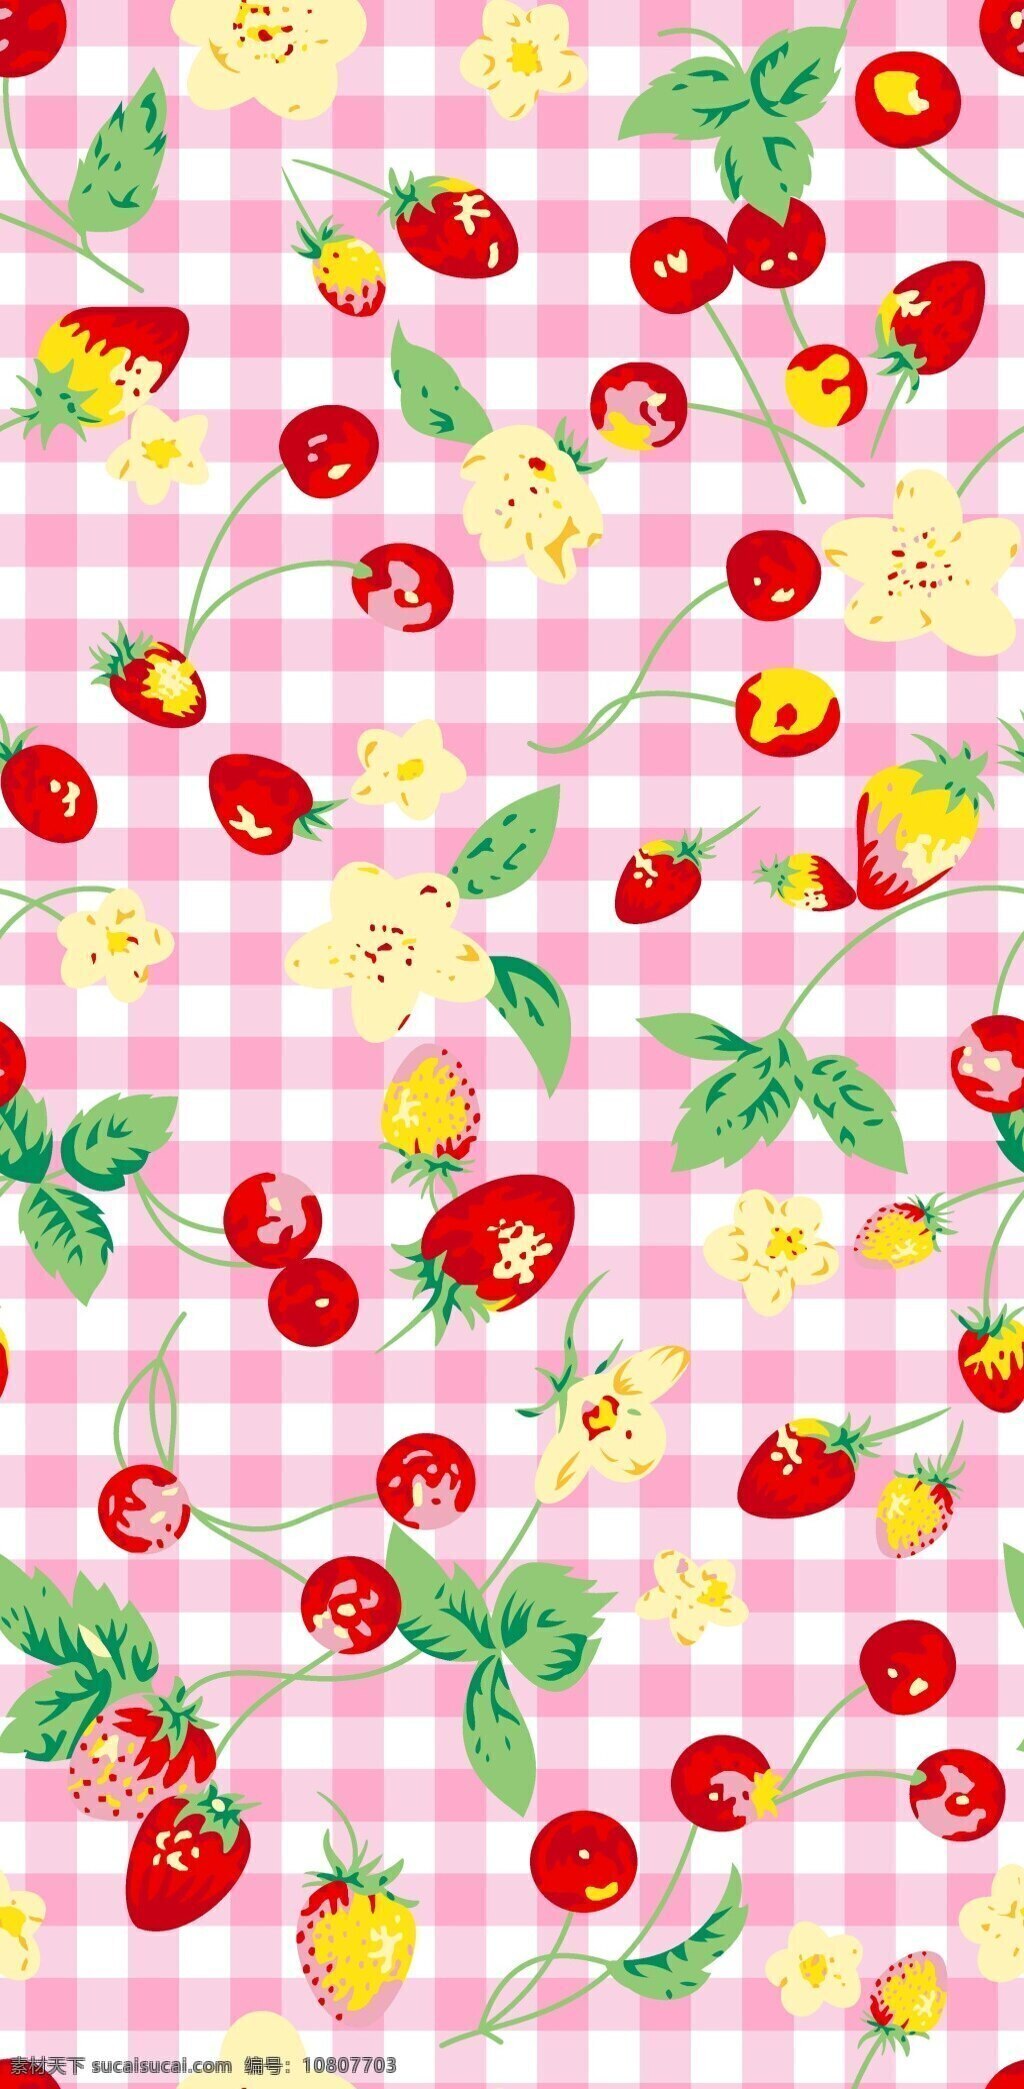 粉 格 草莓 花 图案 草莓花 粉格草莓 粉格草莓花 粉格子 装饰图